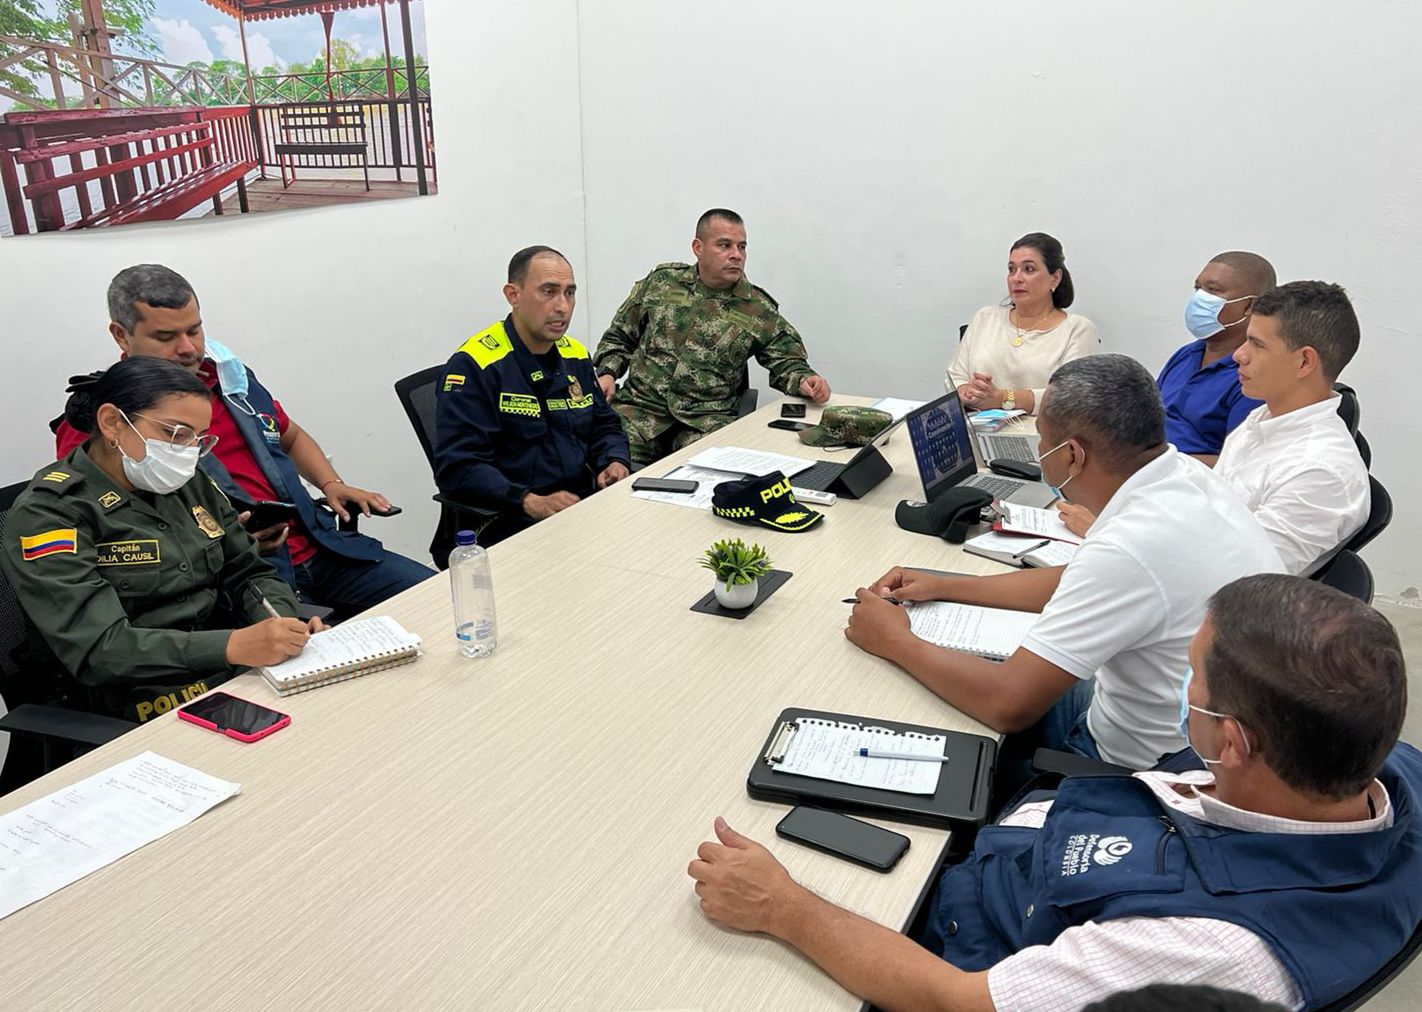 Montería realizó Consejo de Seguridad por protestas previstas para el 30 de abril y el 1 de mayo